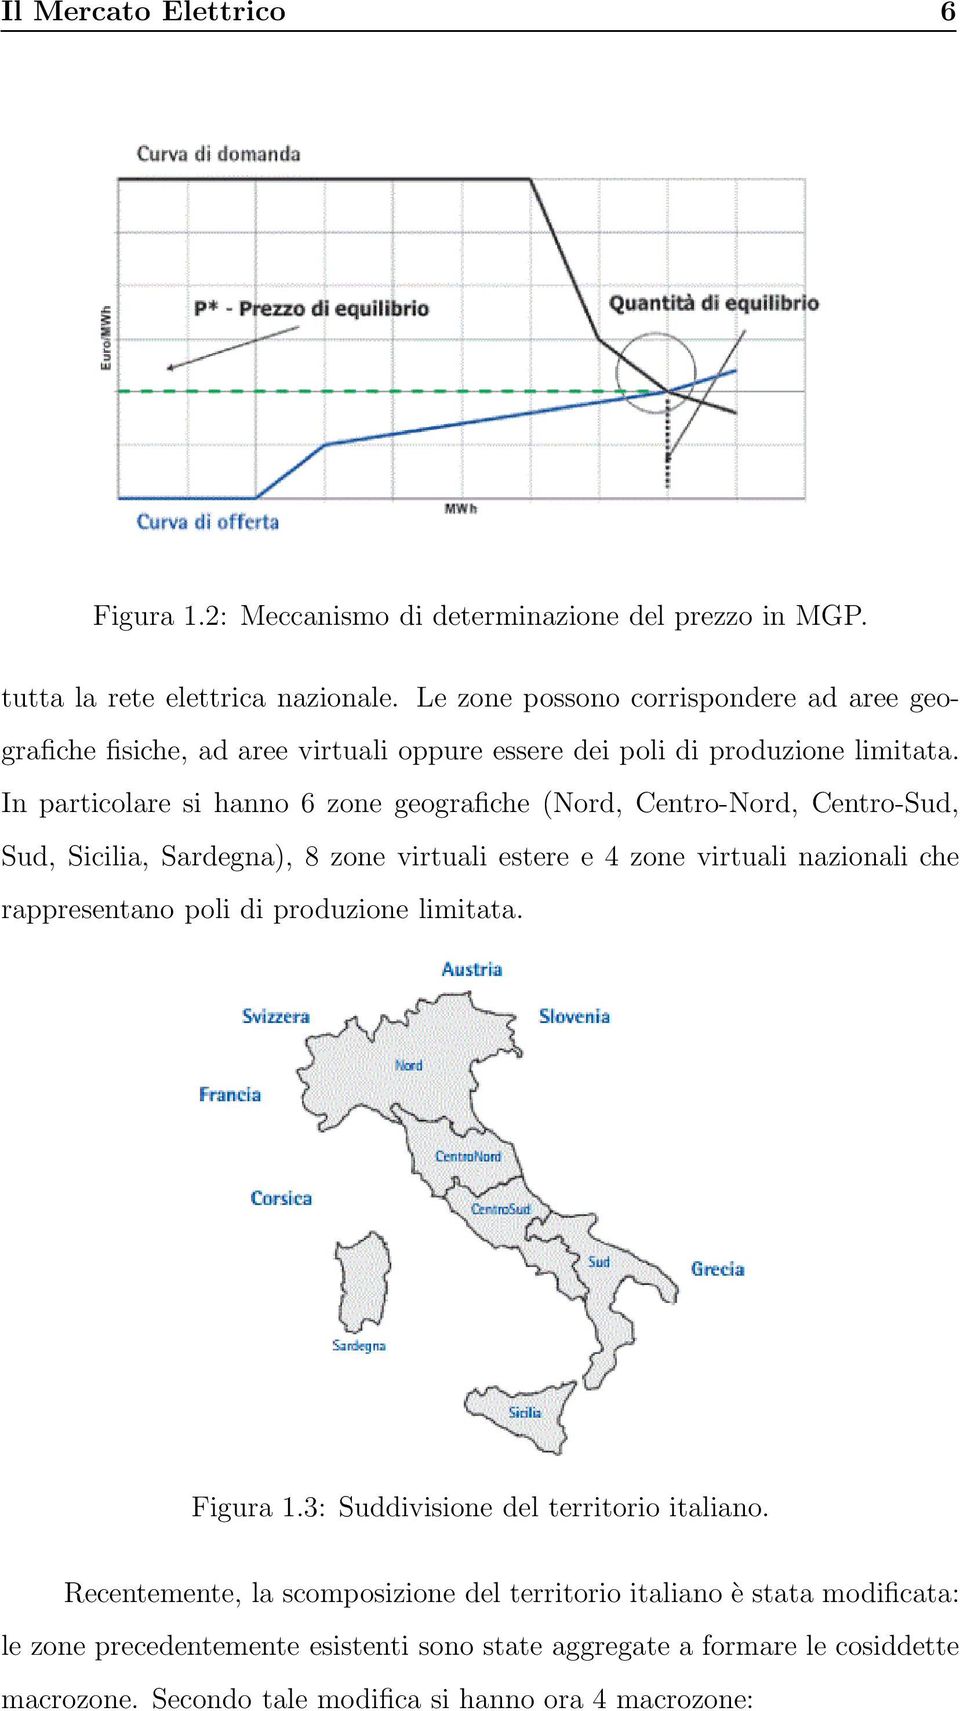 In particolare si hanno 6 zone geografiche (Nord, Centro-Nord, Centro-Sud, Sud, Sicilia, Sardegna), 8 zone virtuali estere e 4 zone virtuali nazionali che rappresentano poli